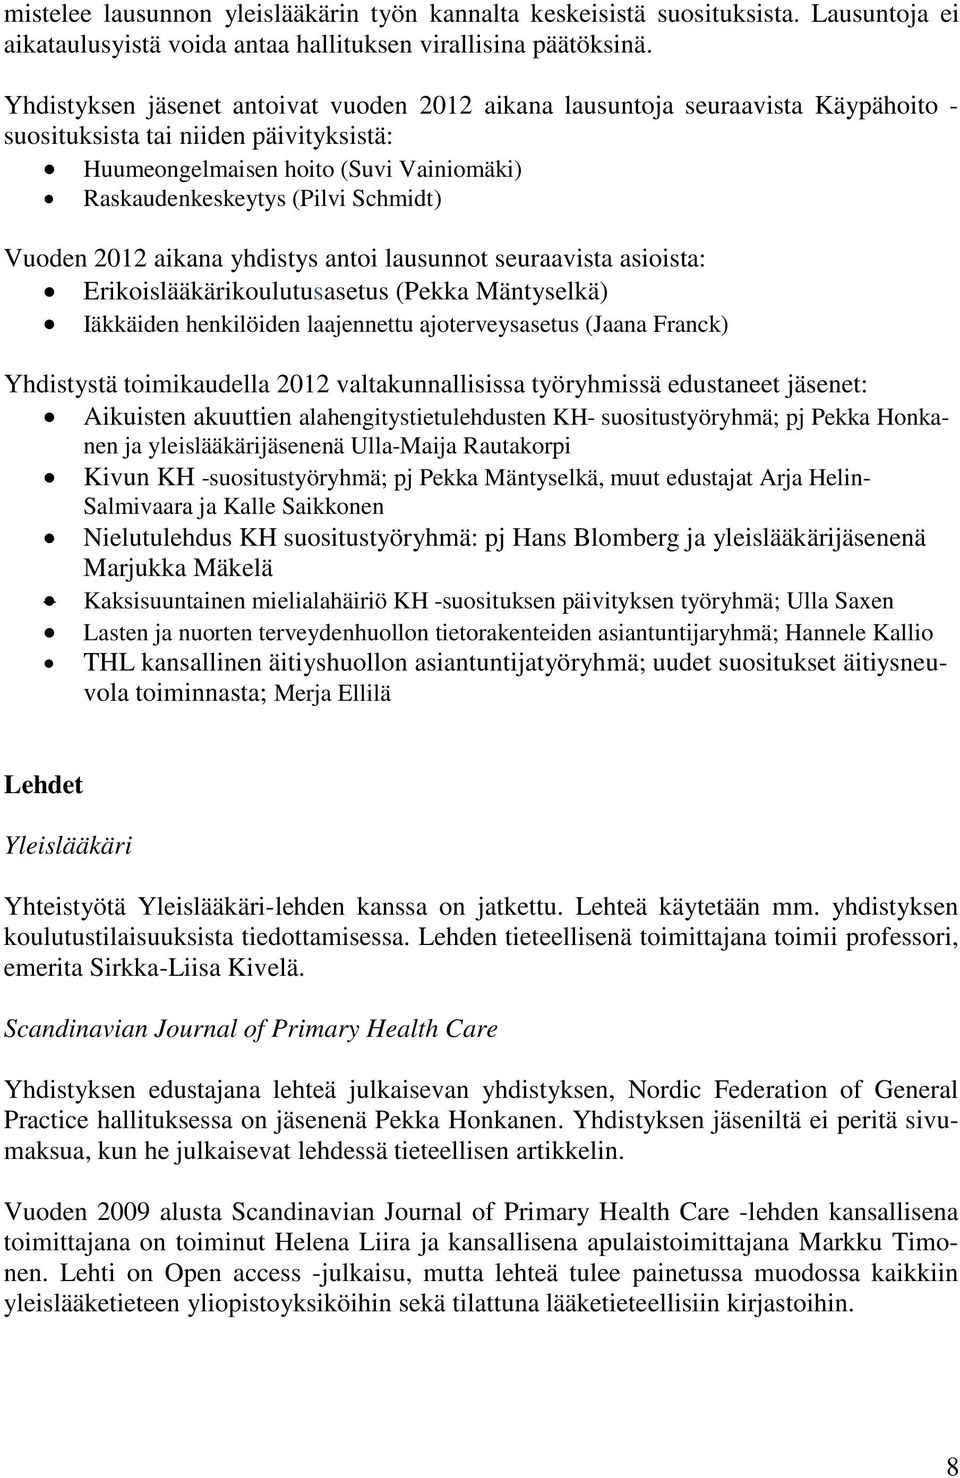 Vuoden 2012 aikana yhdistys antoi lausunnot seuraavista asioista: Erikoislääkärikoulutusasetus (Pekka Mäntyselkä) Iäkkäiden henkilöiden laajennettu ajoterveysasetus (Jaana Franck) Yhdistystä